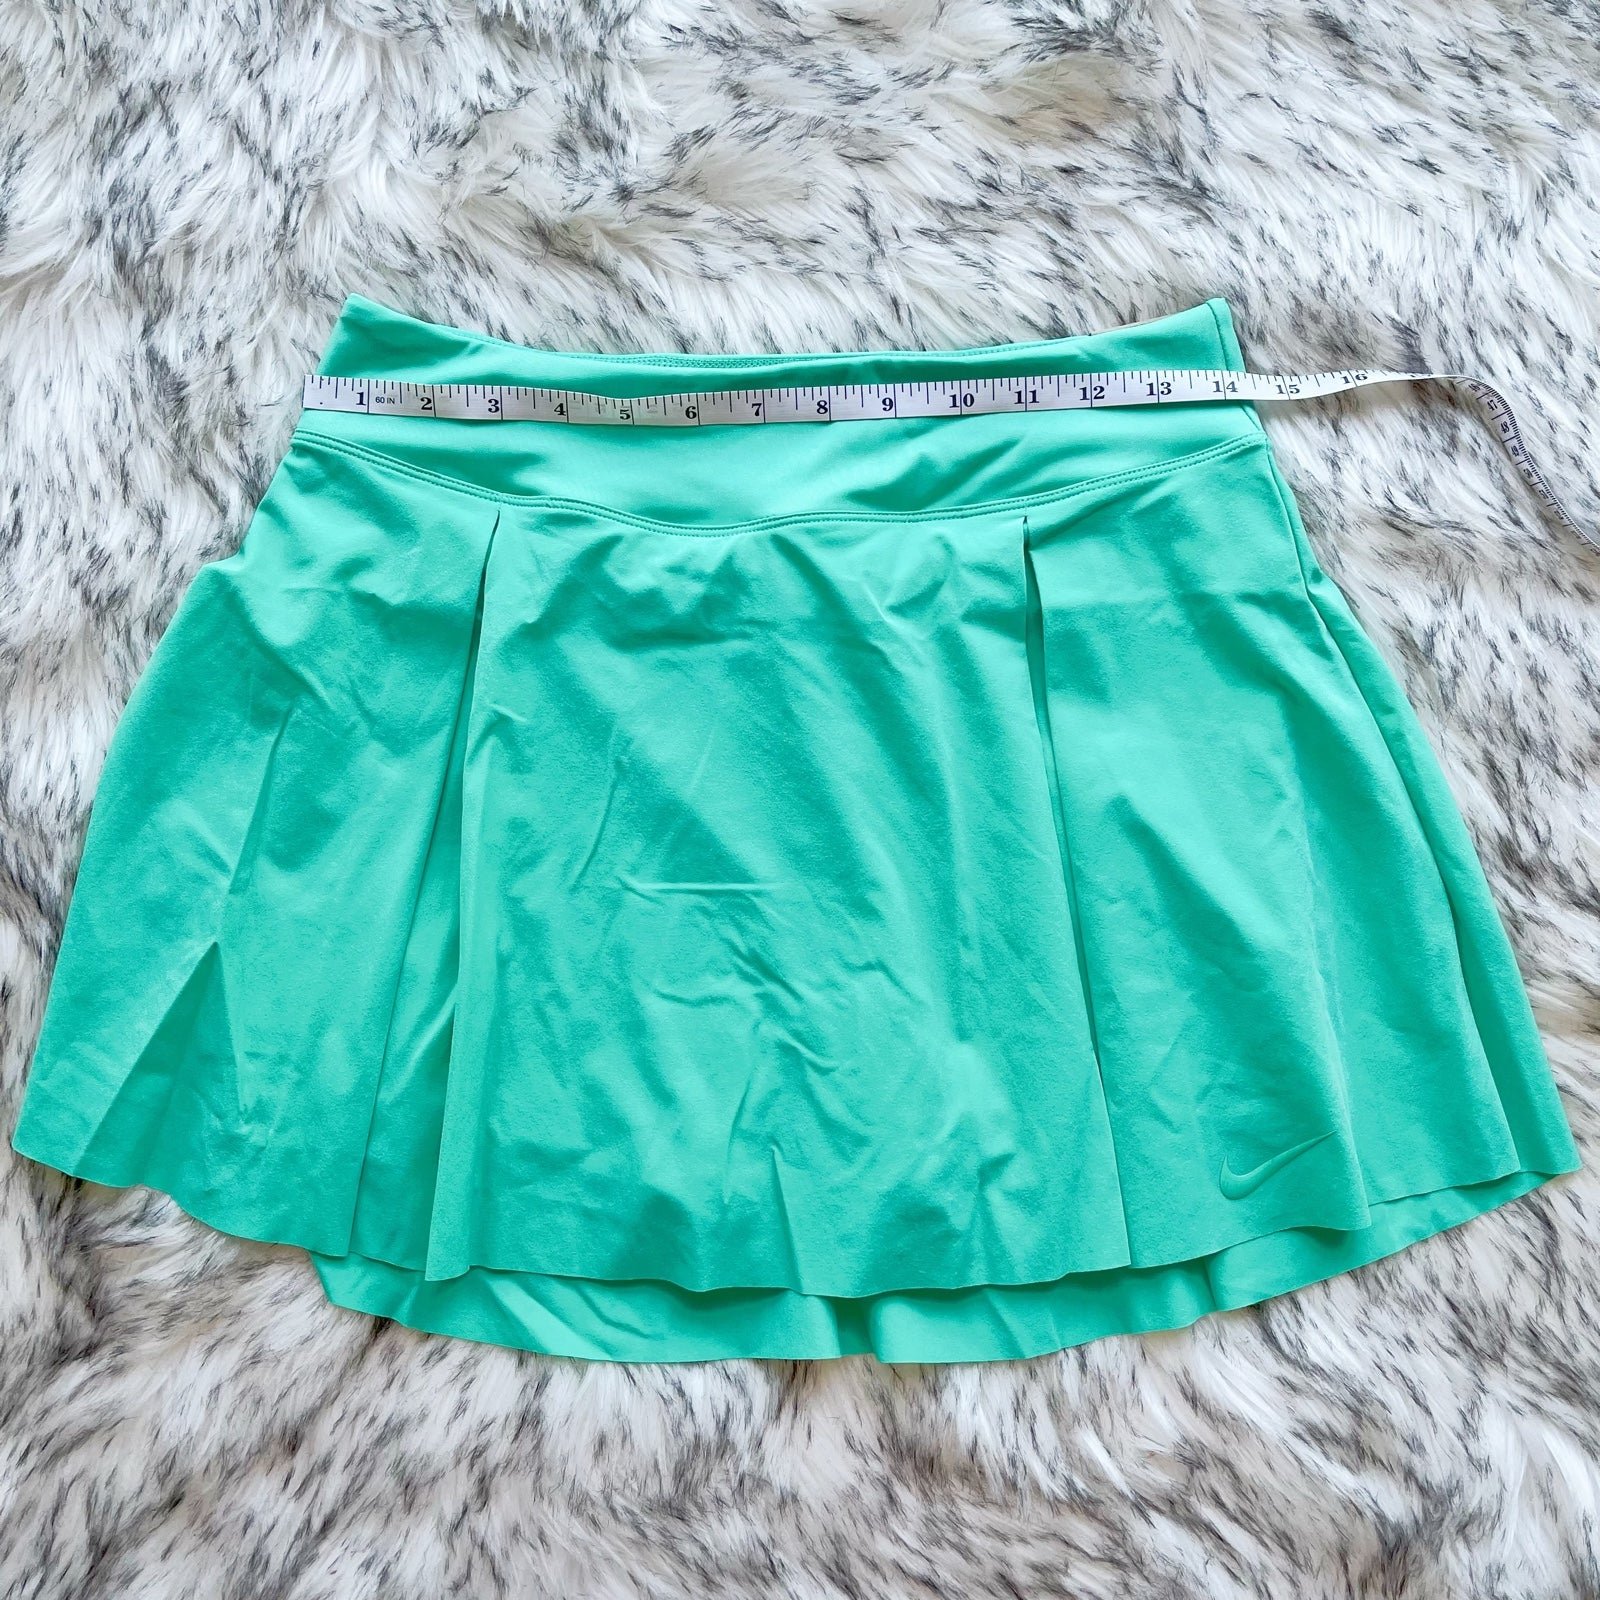 The Best Seller Nike Dri-Fit Skorts Pleated Golf Skirt green cyan p8O3hJoch Zero Profit 